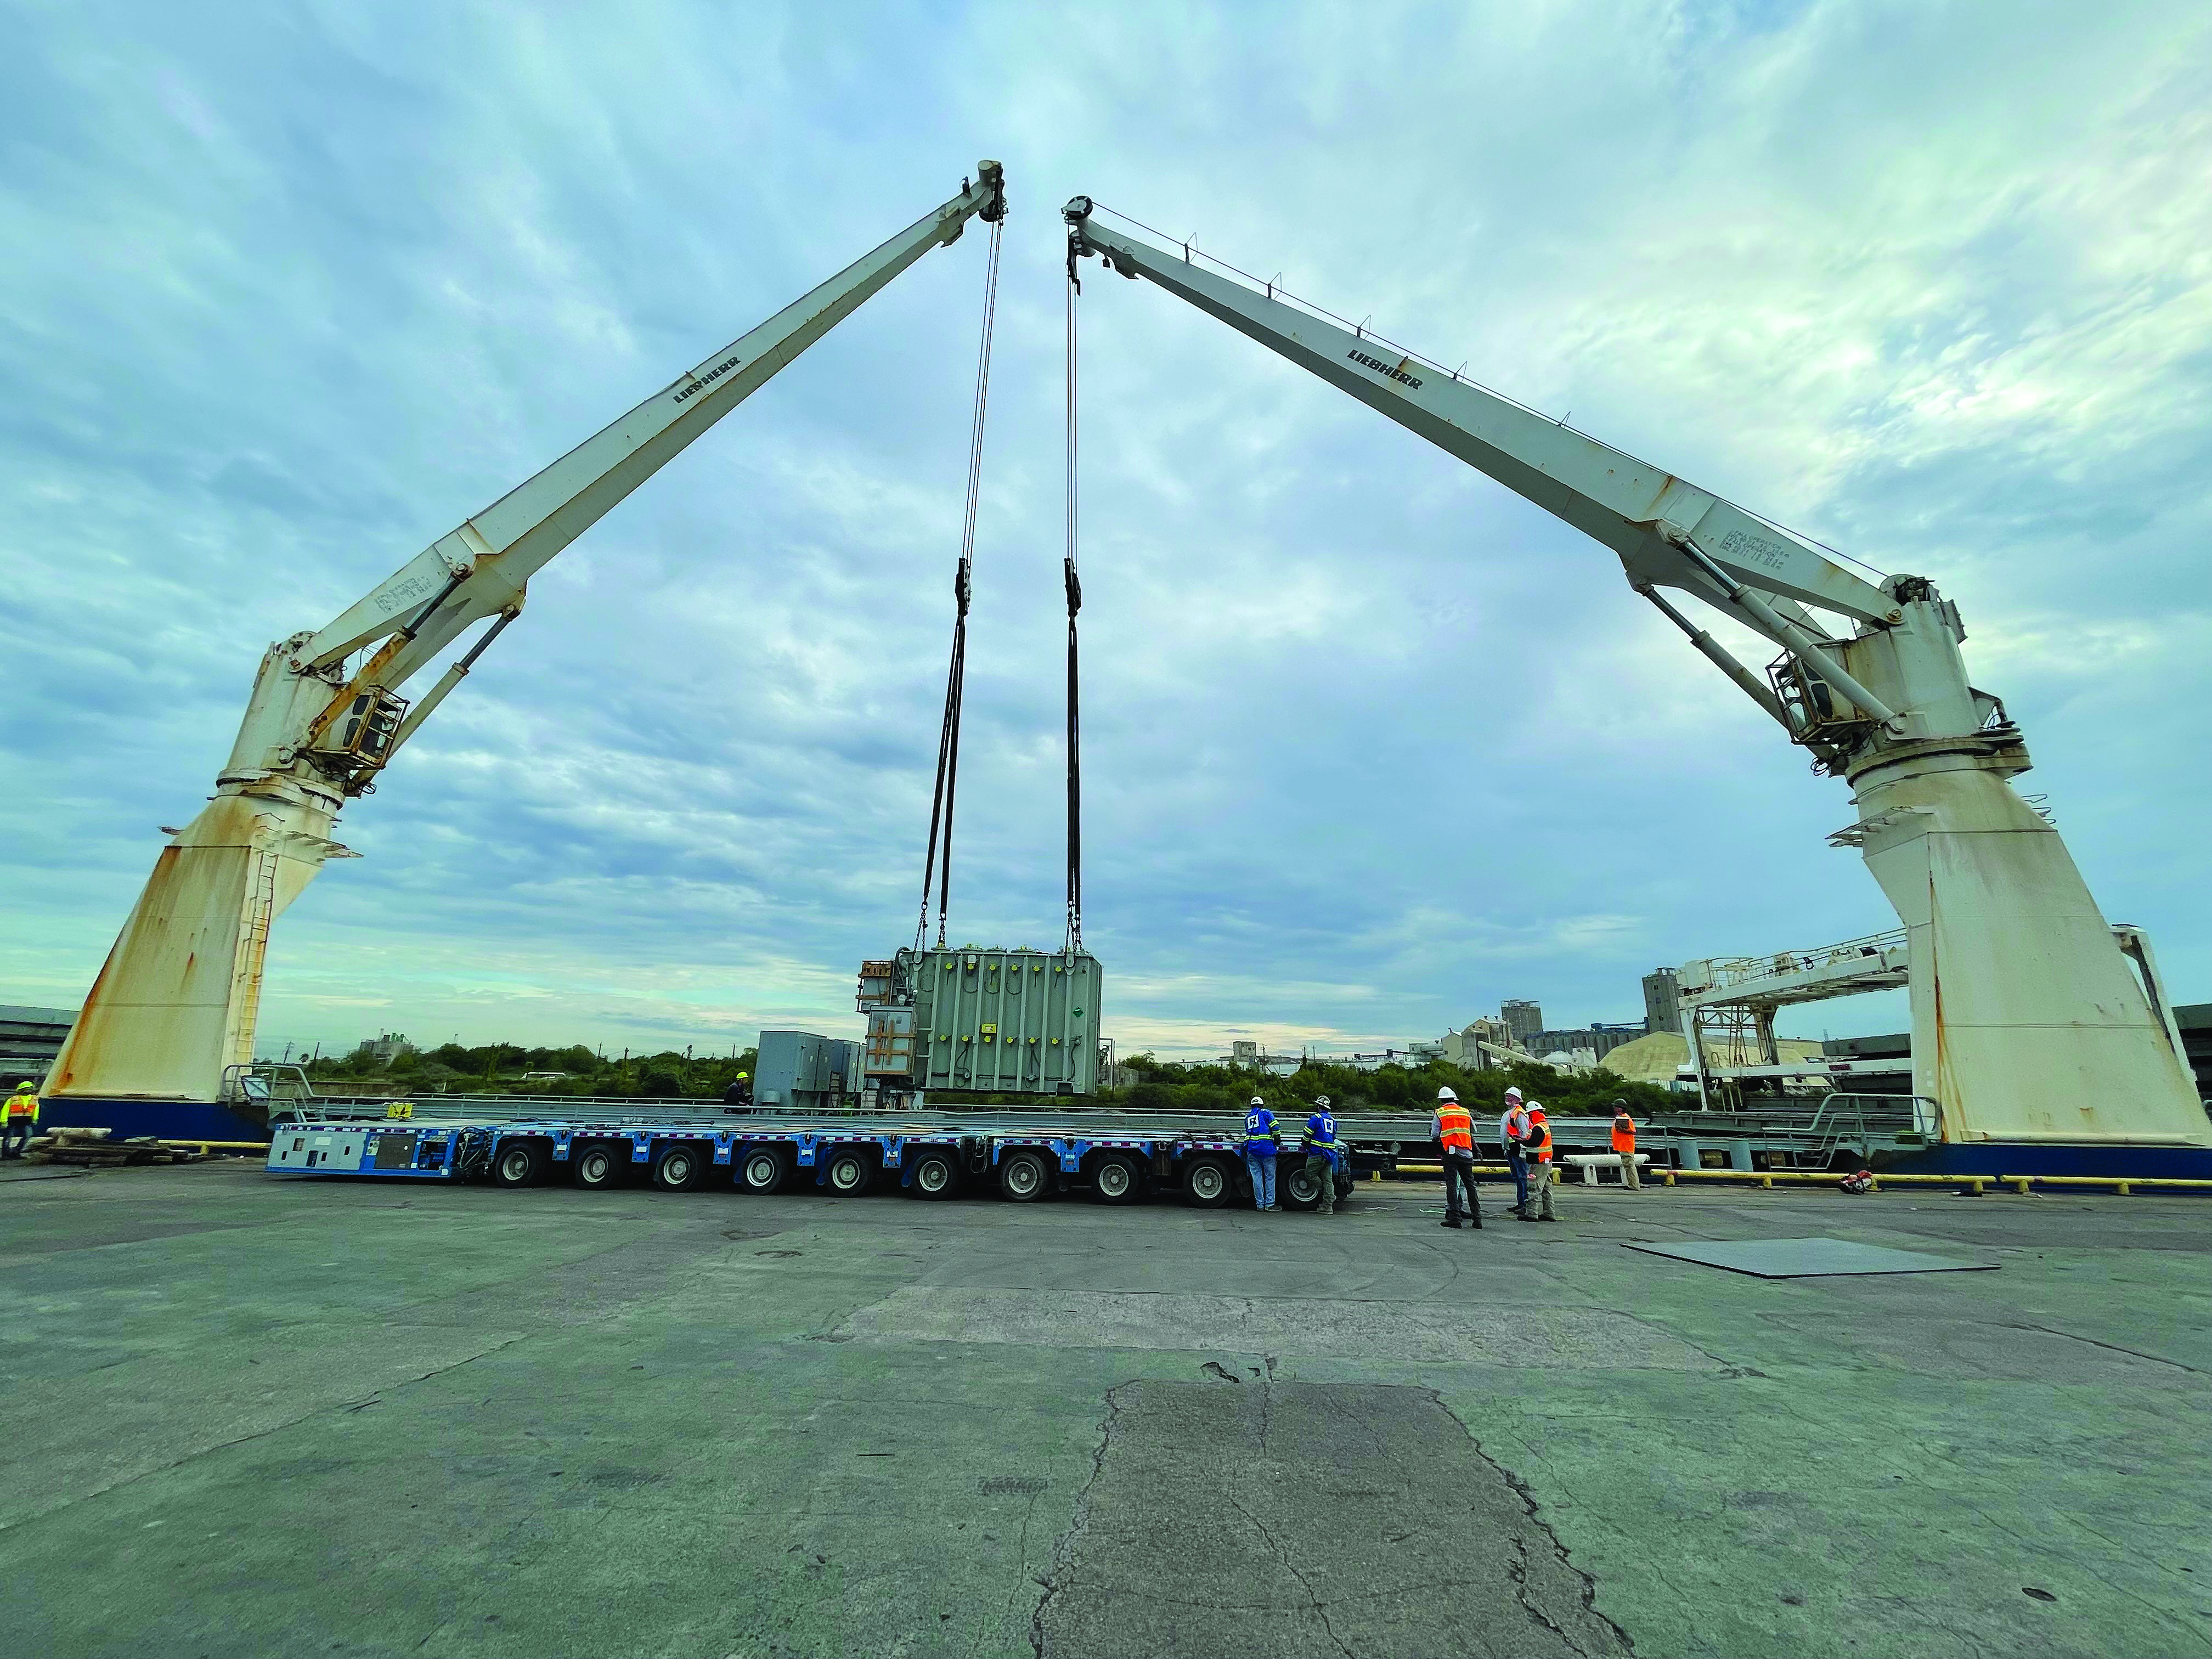 Cranes lowering transformer onto cargo ship